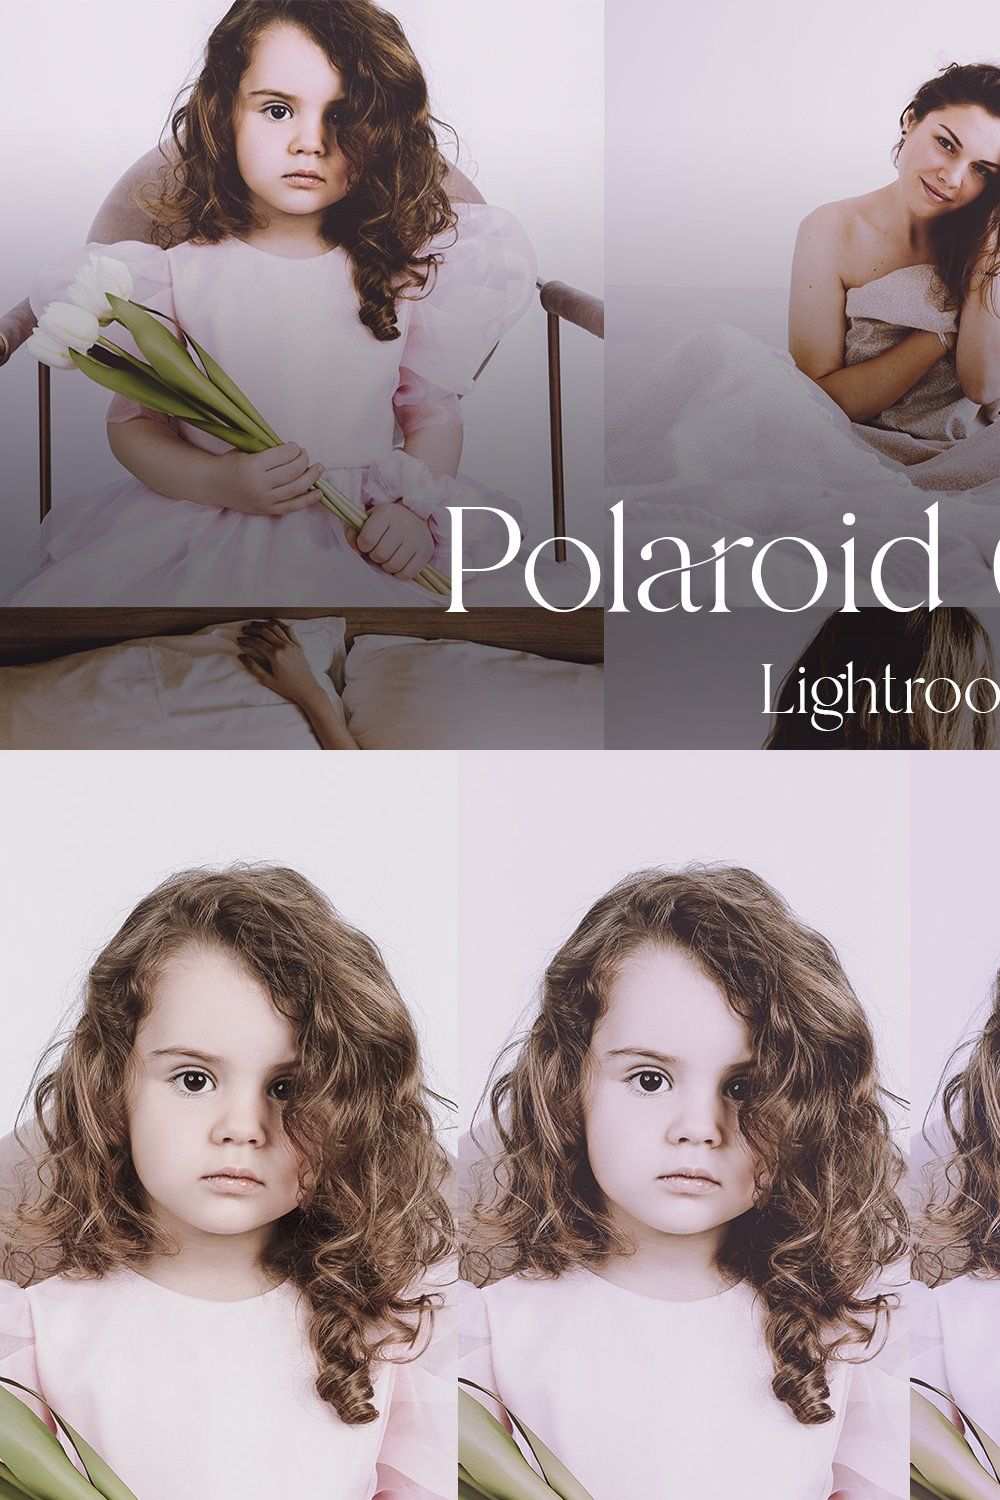 Polaroid 690 V2 — Lightroom pinterest preview image.